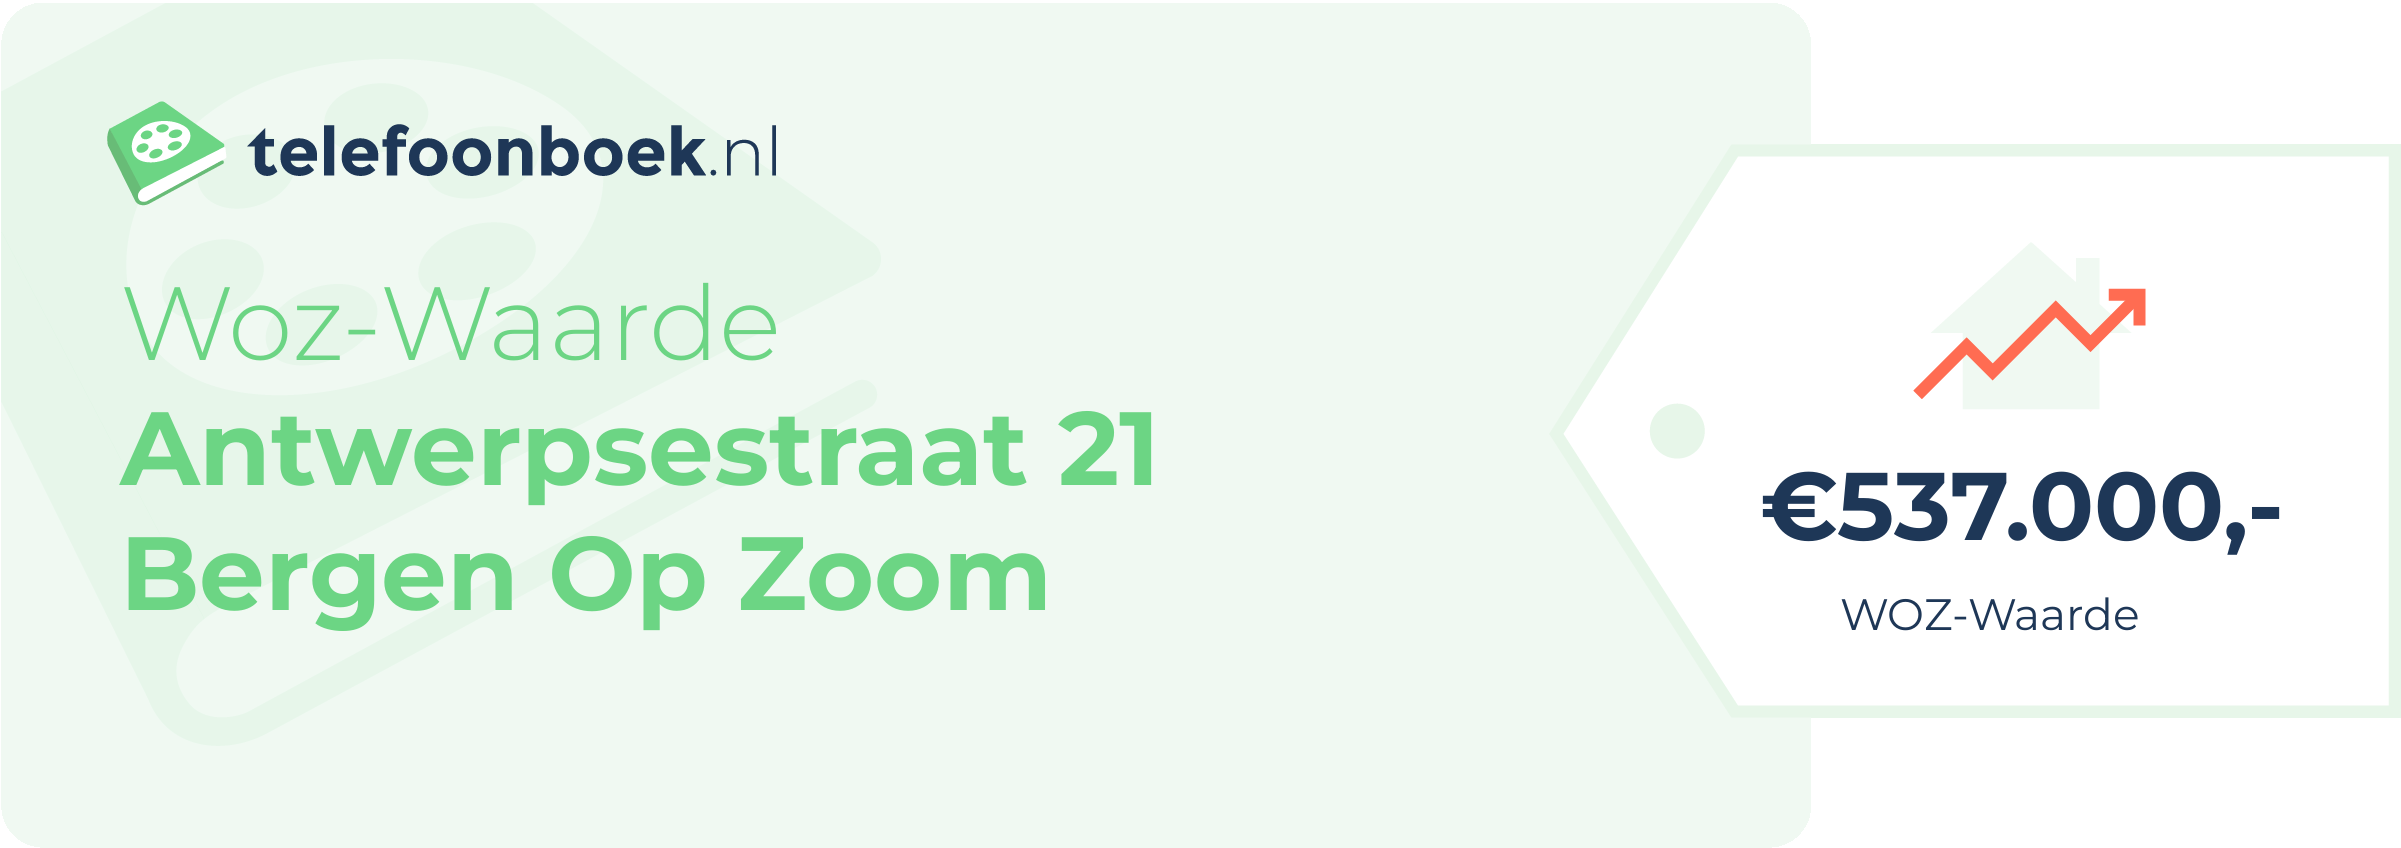 WOZ-waarde Antwerpsestraat 21 Bergen Op Zoom